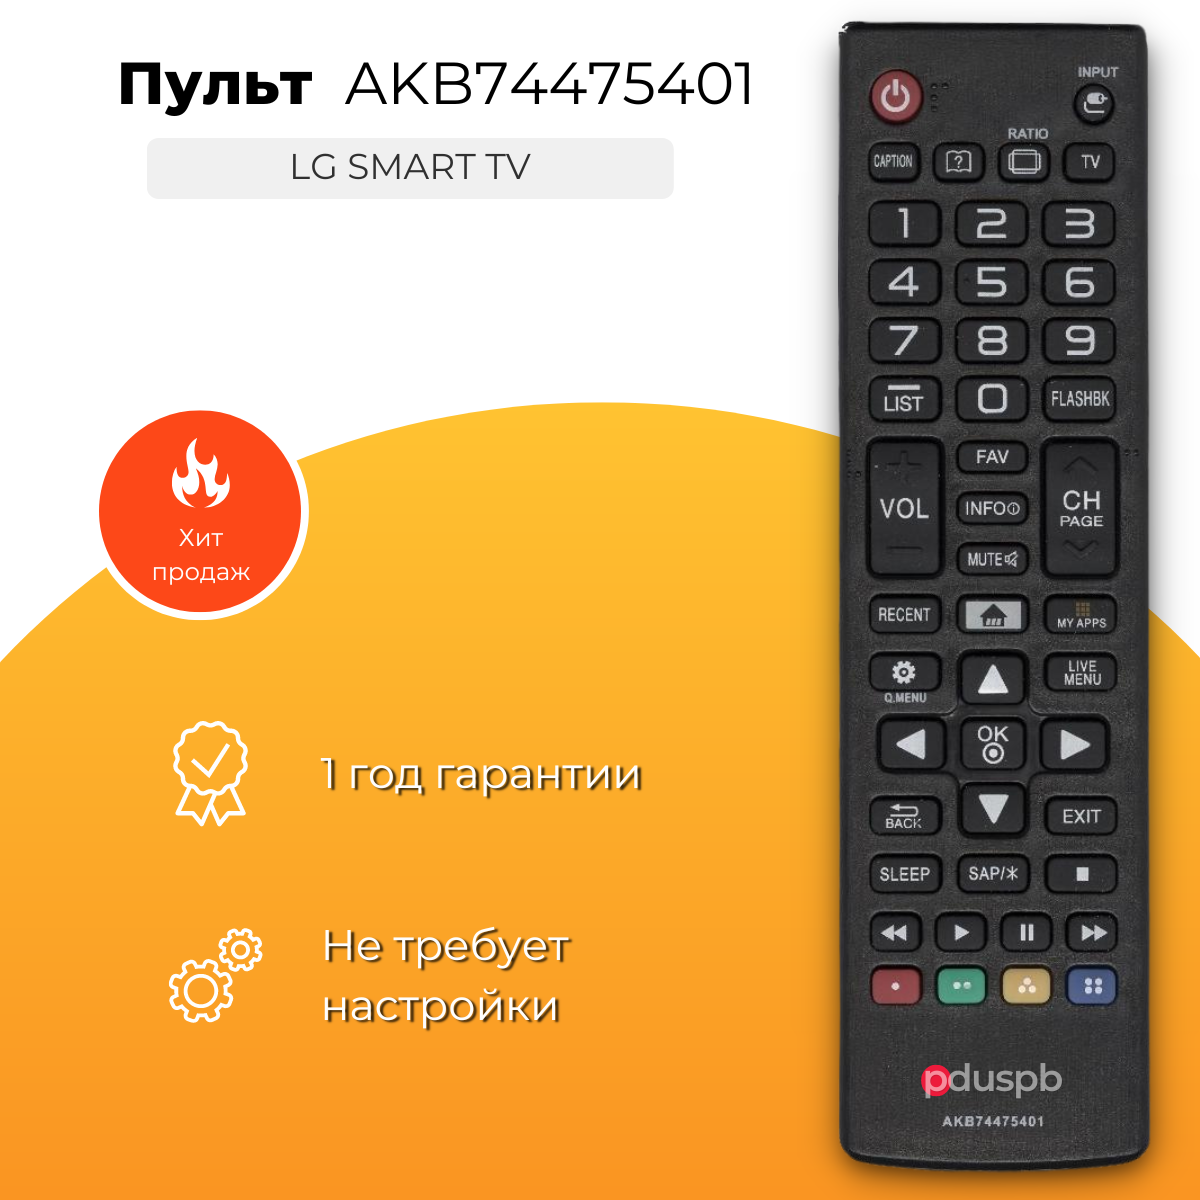 Пульт PDUSPB AKB74475401 для LG Smart TV